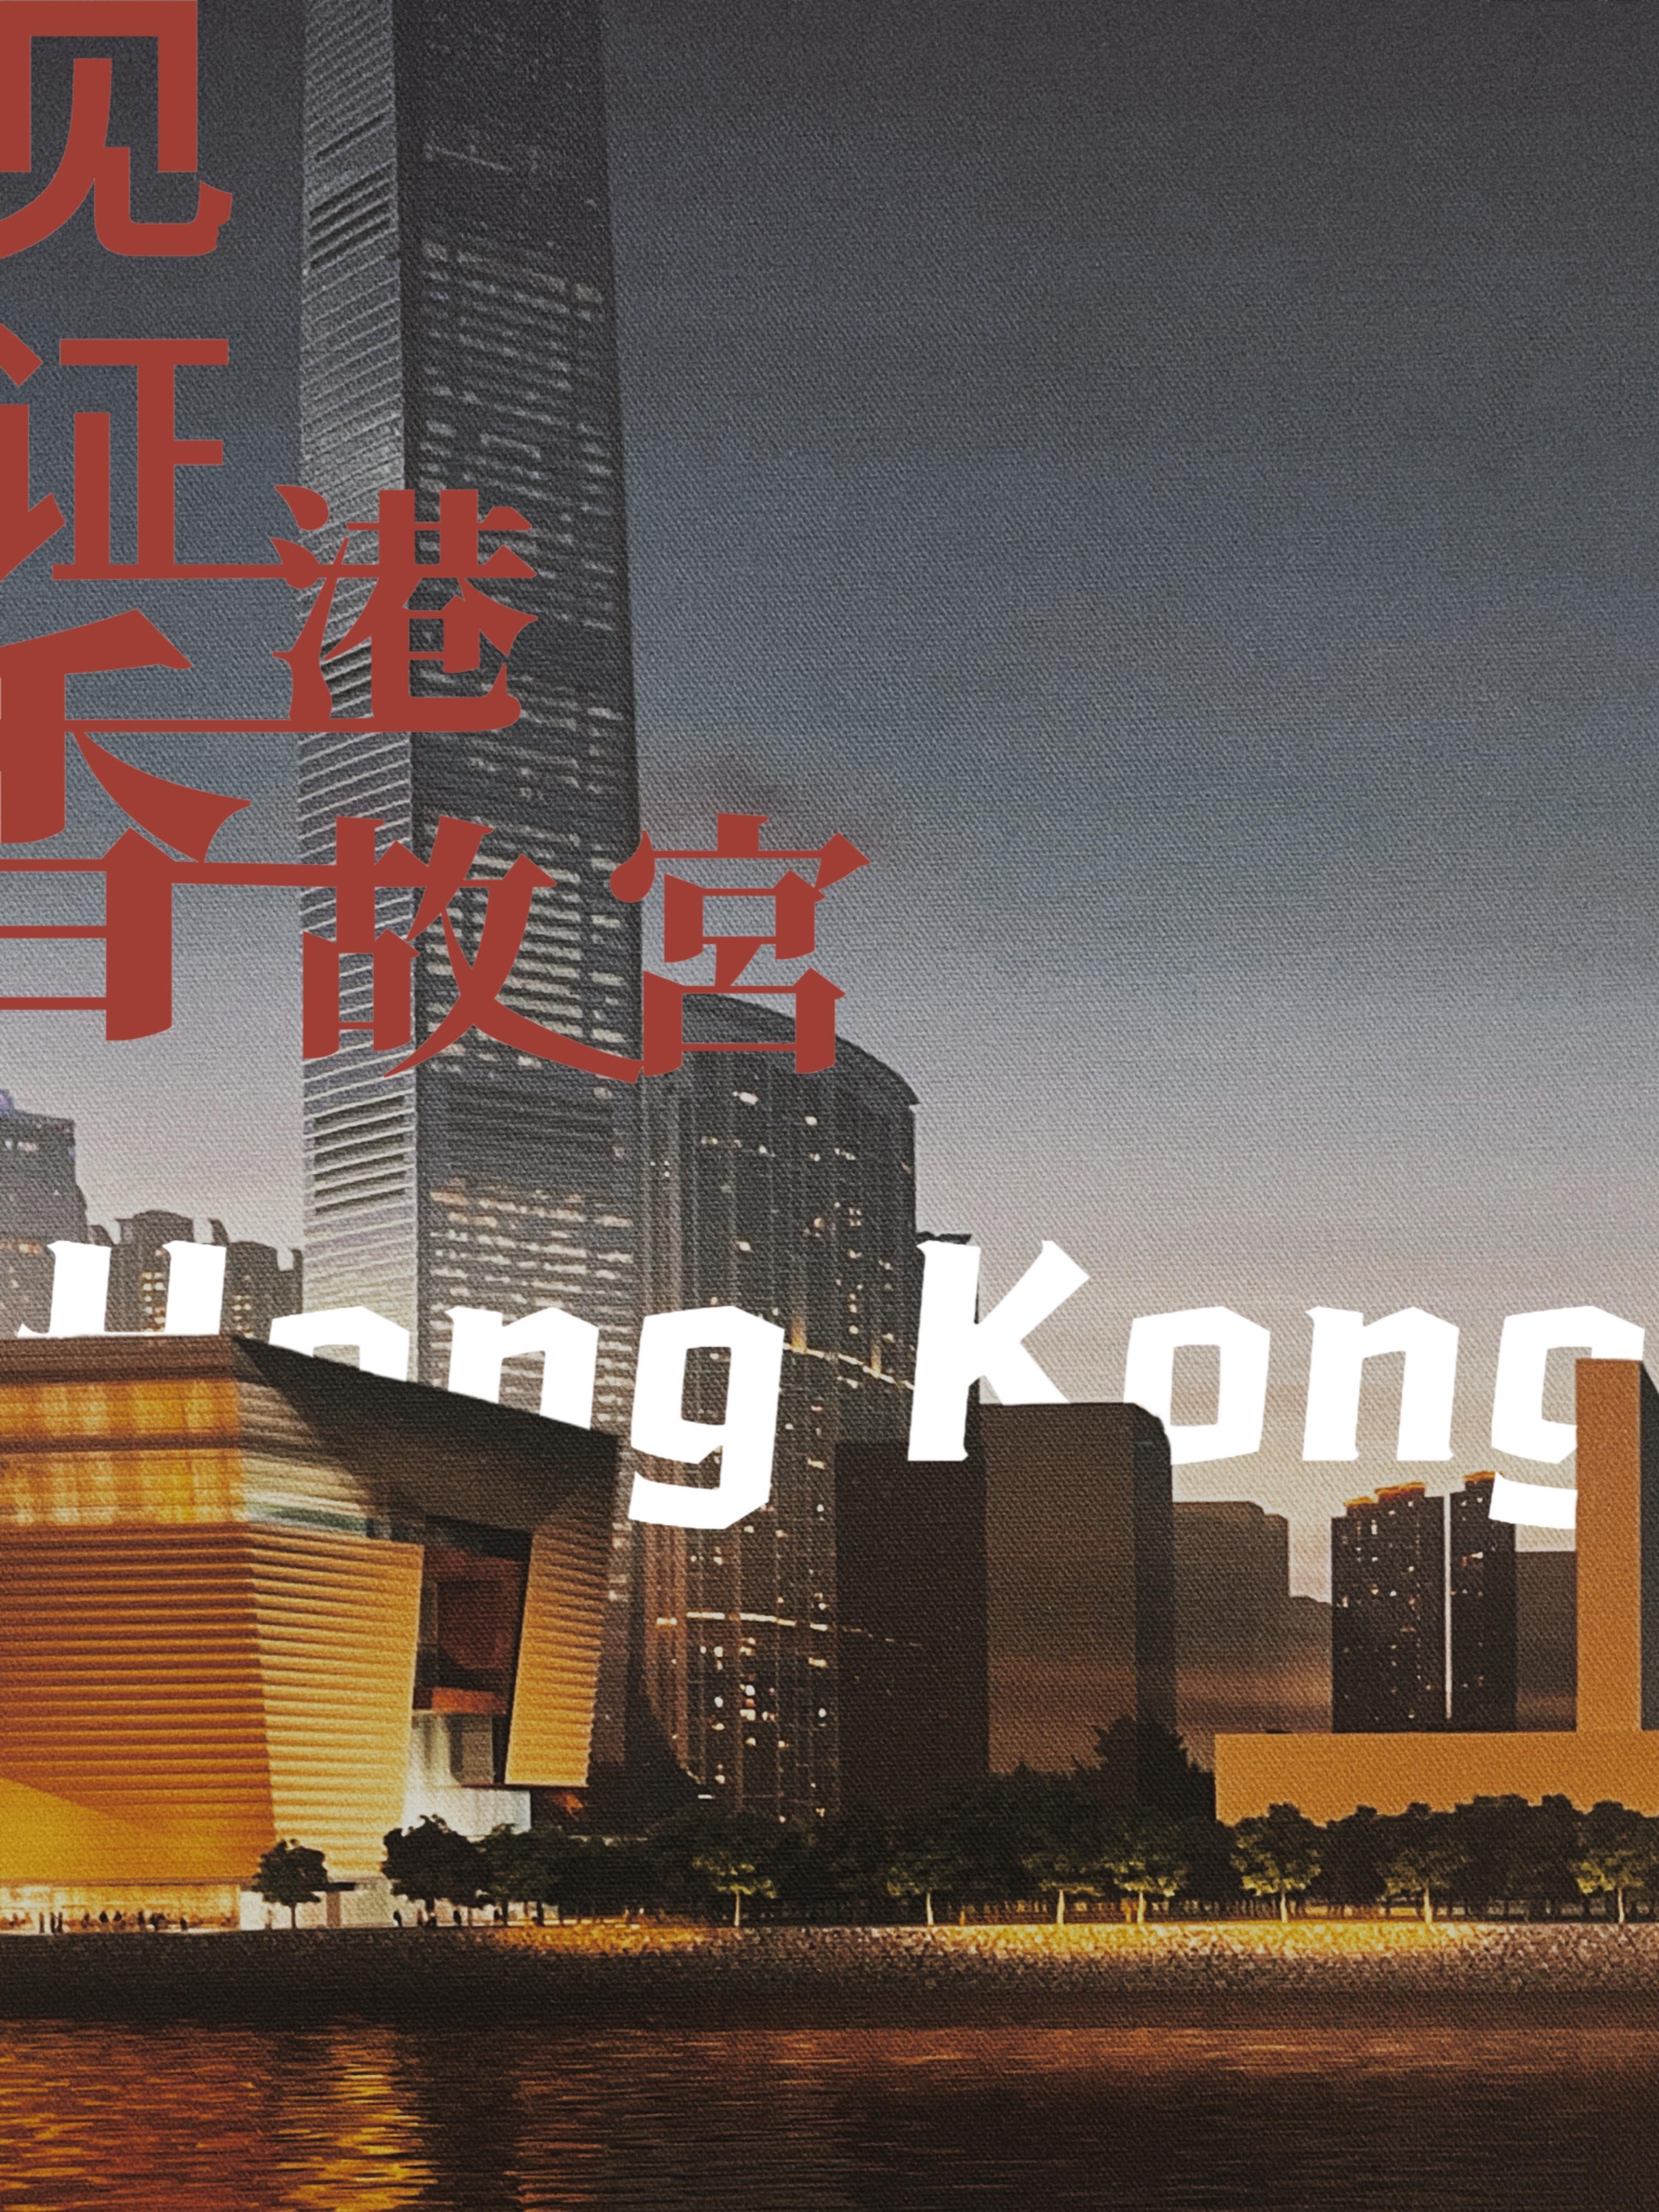 东方之珠重放异彩！总台推出系列精品节目庆祝香港回归祖国25周年 